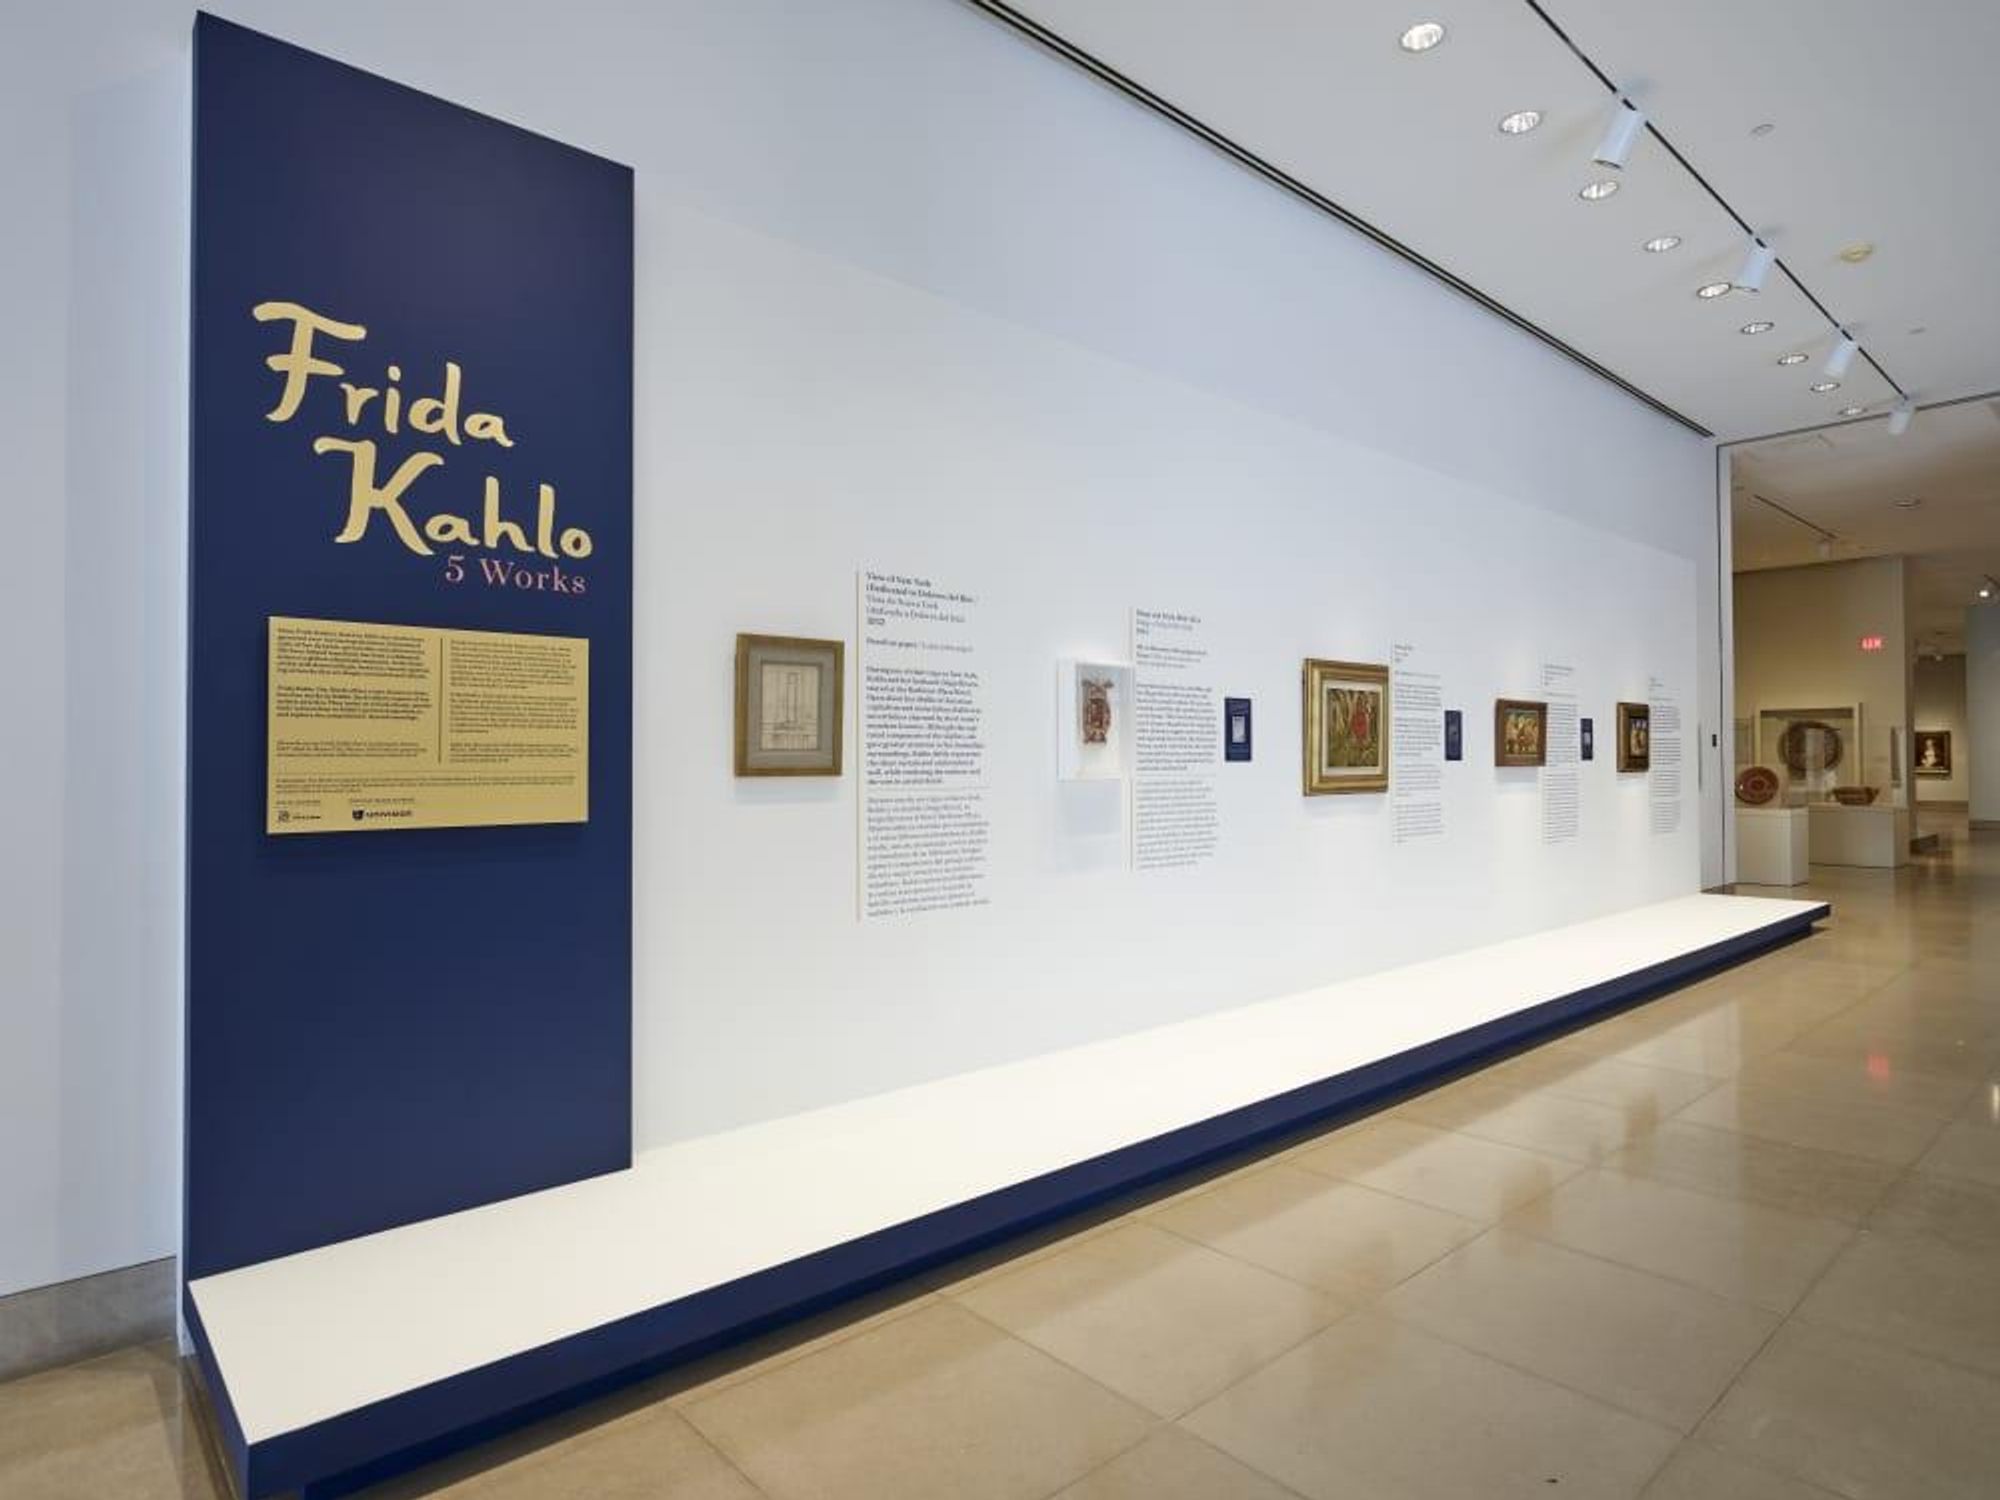 "Frida Kahlo: Five Works" at DMA